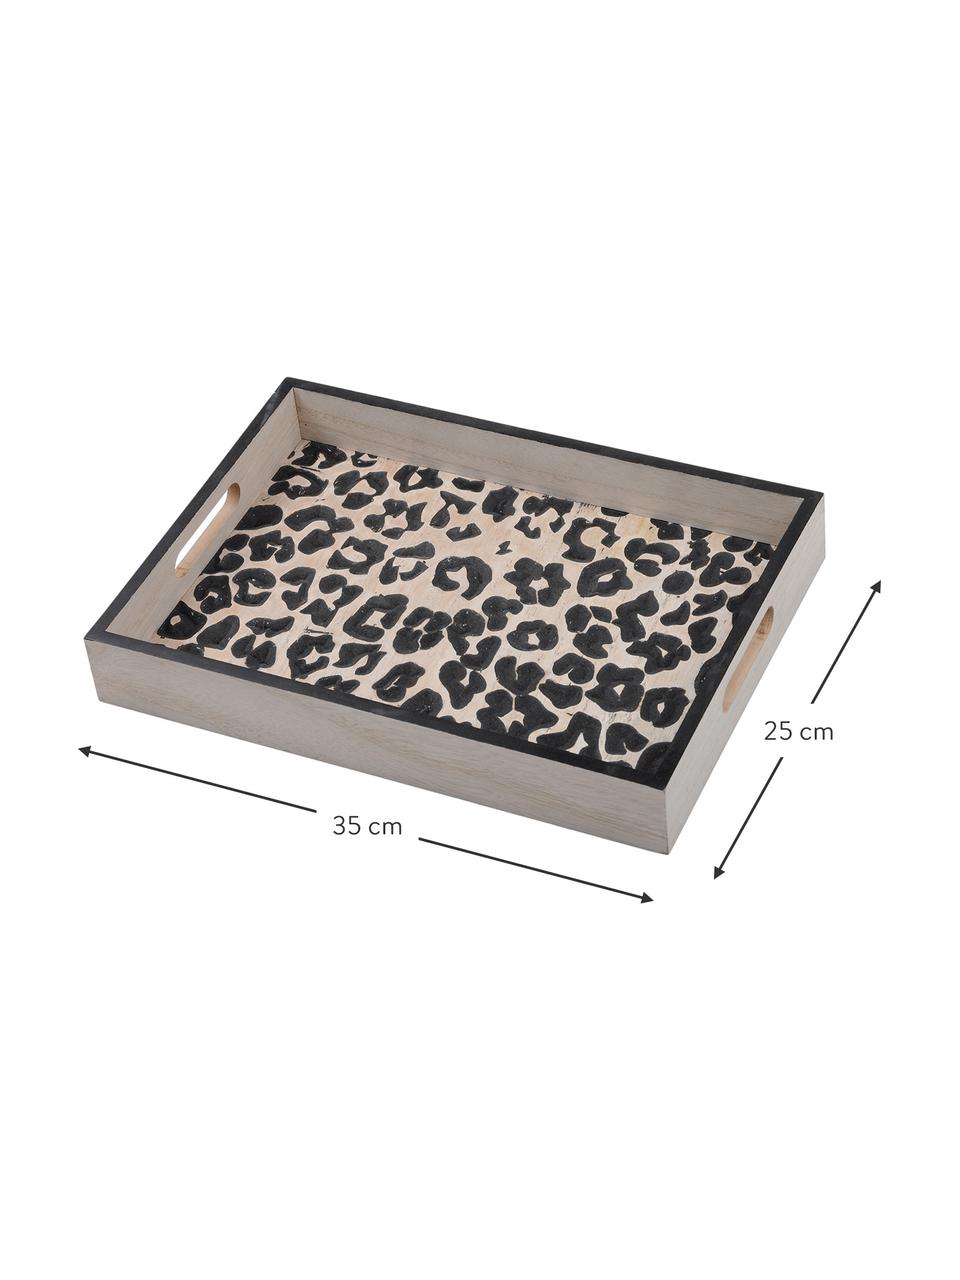 Taca z drewna Leopard, Płyta pilśniowa średniej gęstości (MDF), Beżowy, czarny, D 35 x S 25 cm